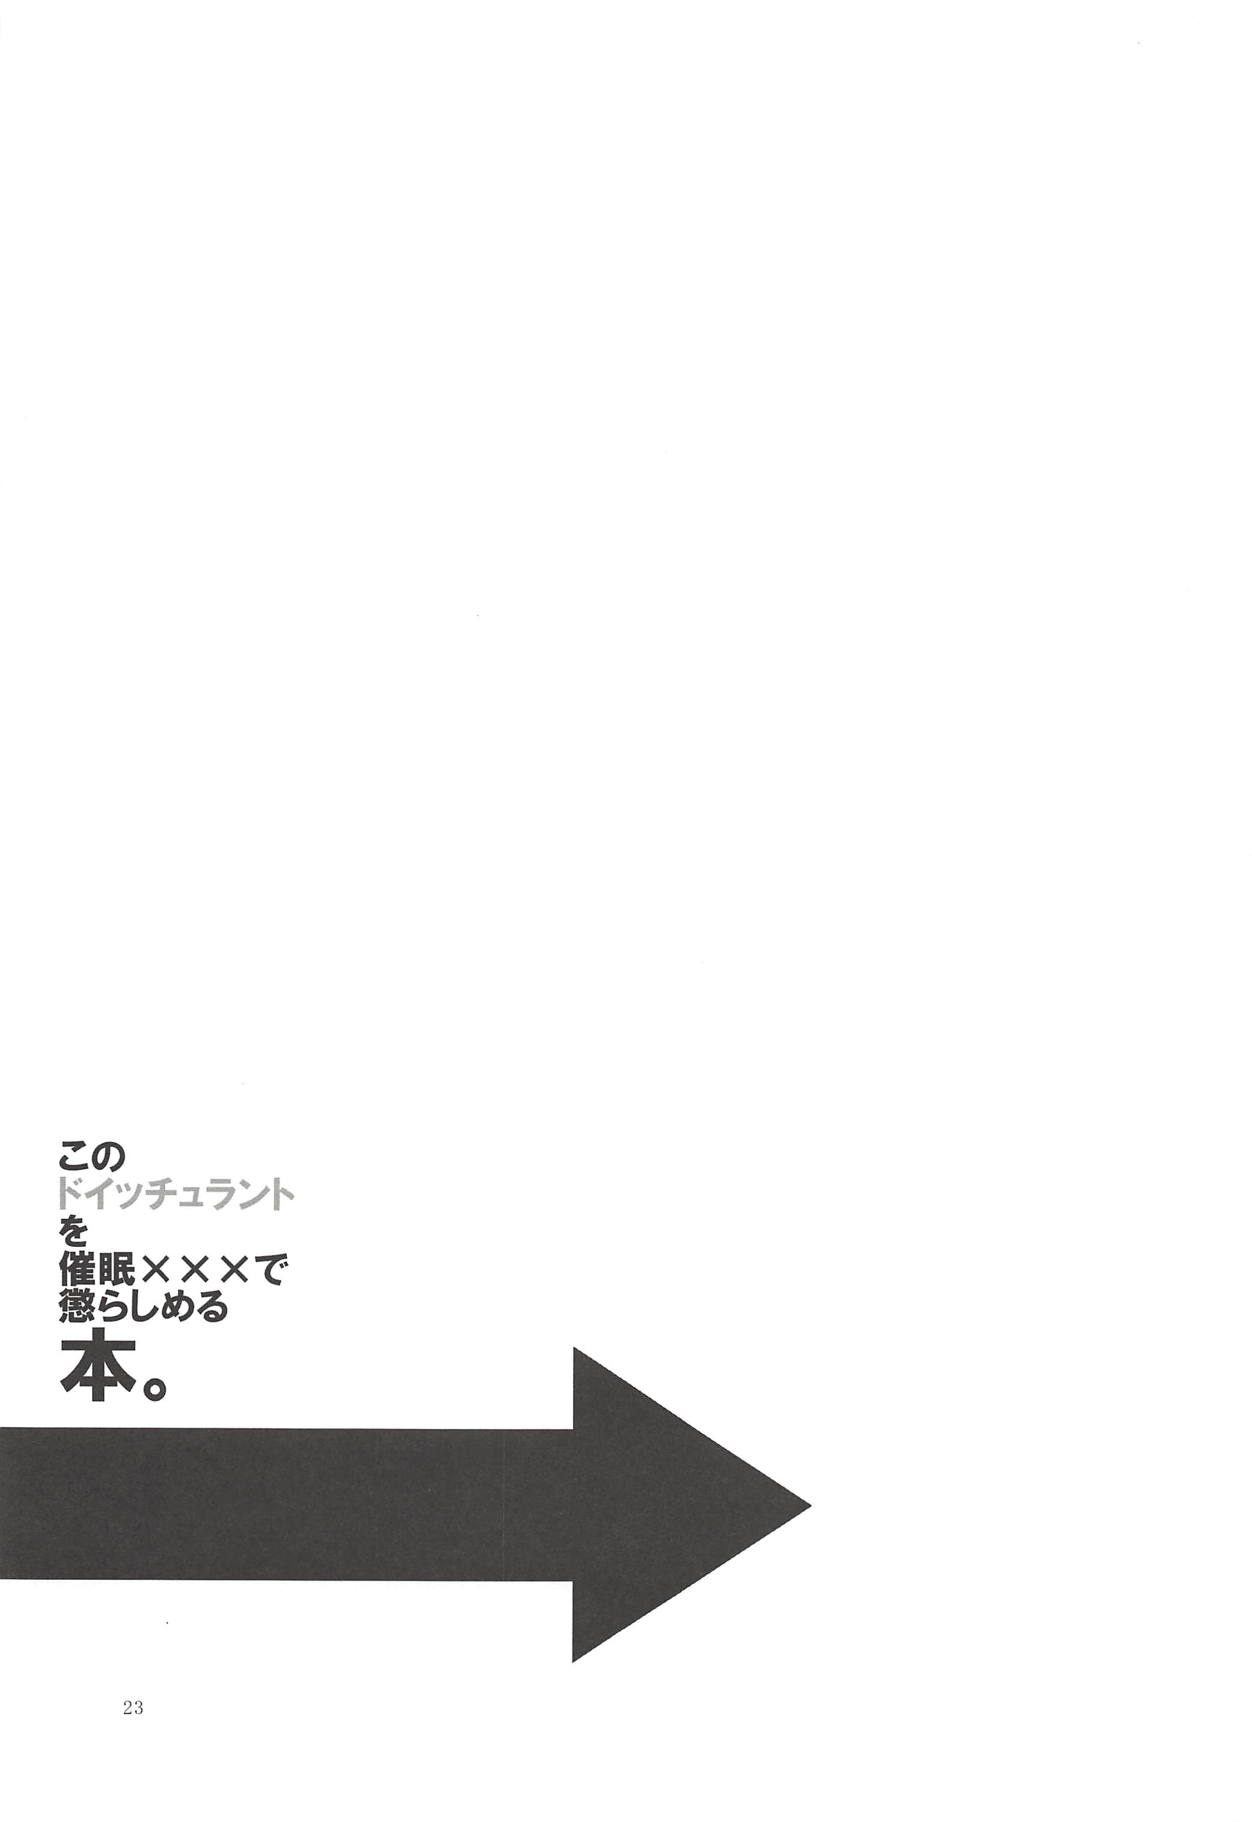 (アズレン夢想5) [オロリヤ鉛筆堂 (無有利安)] このドイッチュラントを催眠×××で懲らしめる本。 (アズールレーン)